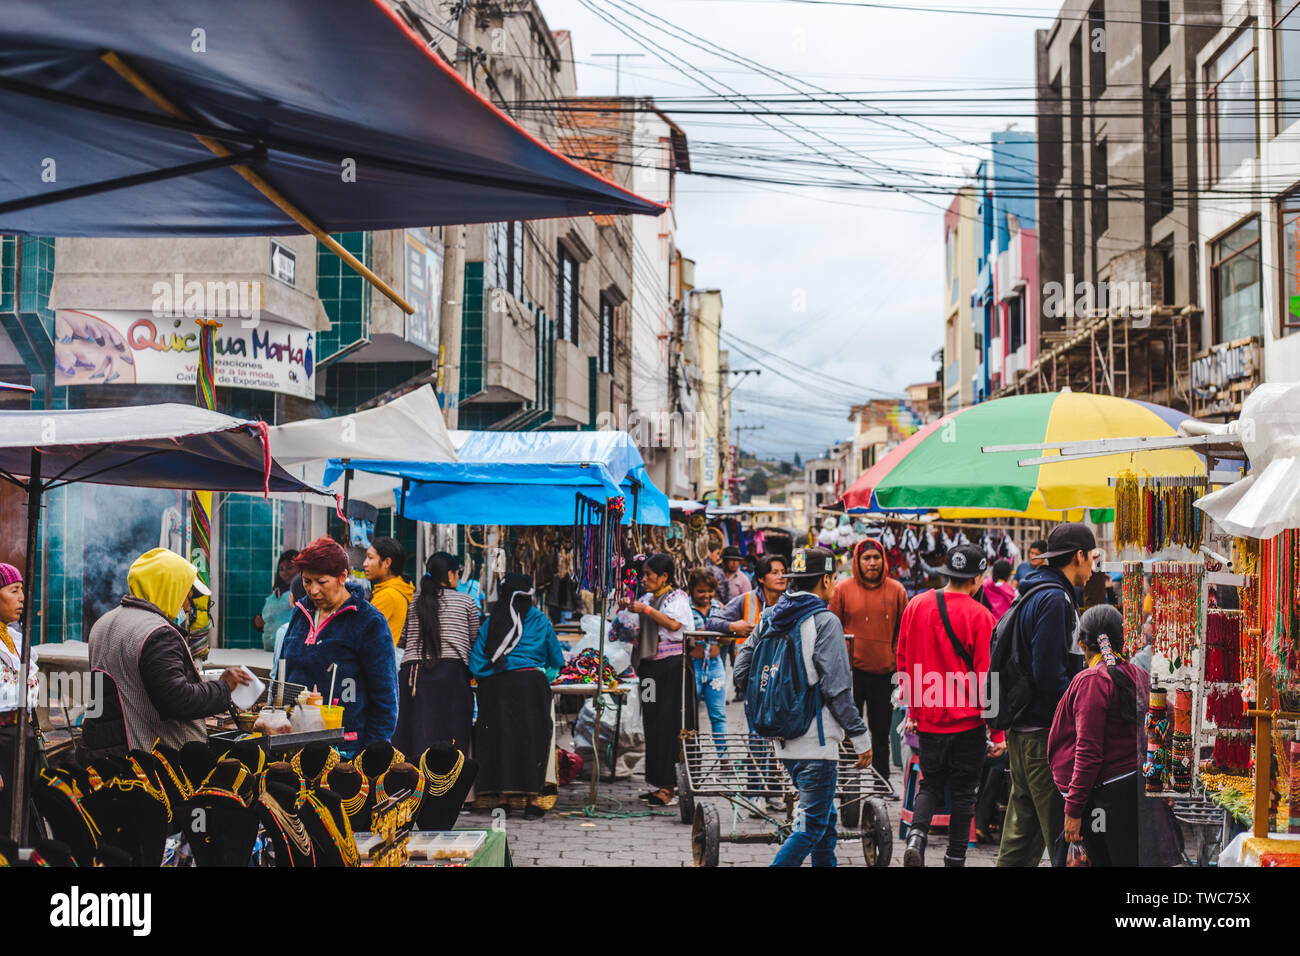 Folle intorno bancarelle con cibo di strada, tessuto e negozio di souvenir nella famosa città indigena Otavalo, uno dei più grandi mercati artigianali in Sud Ameri Foto Stock